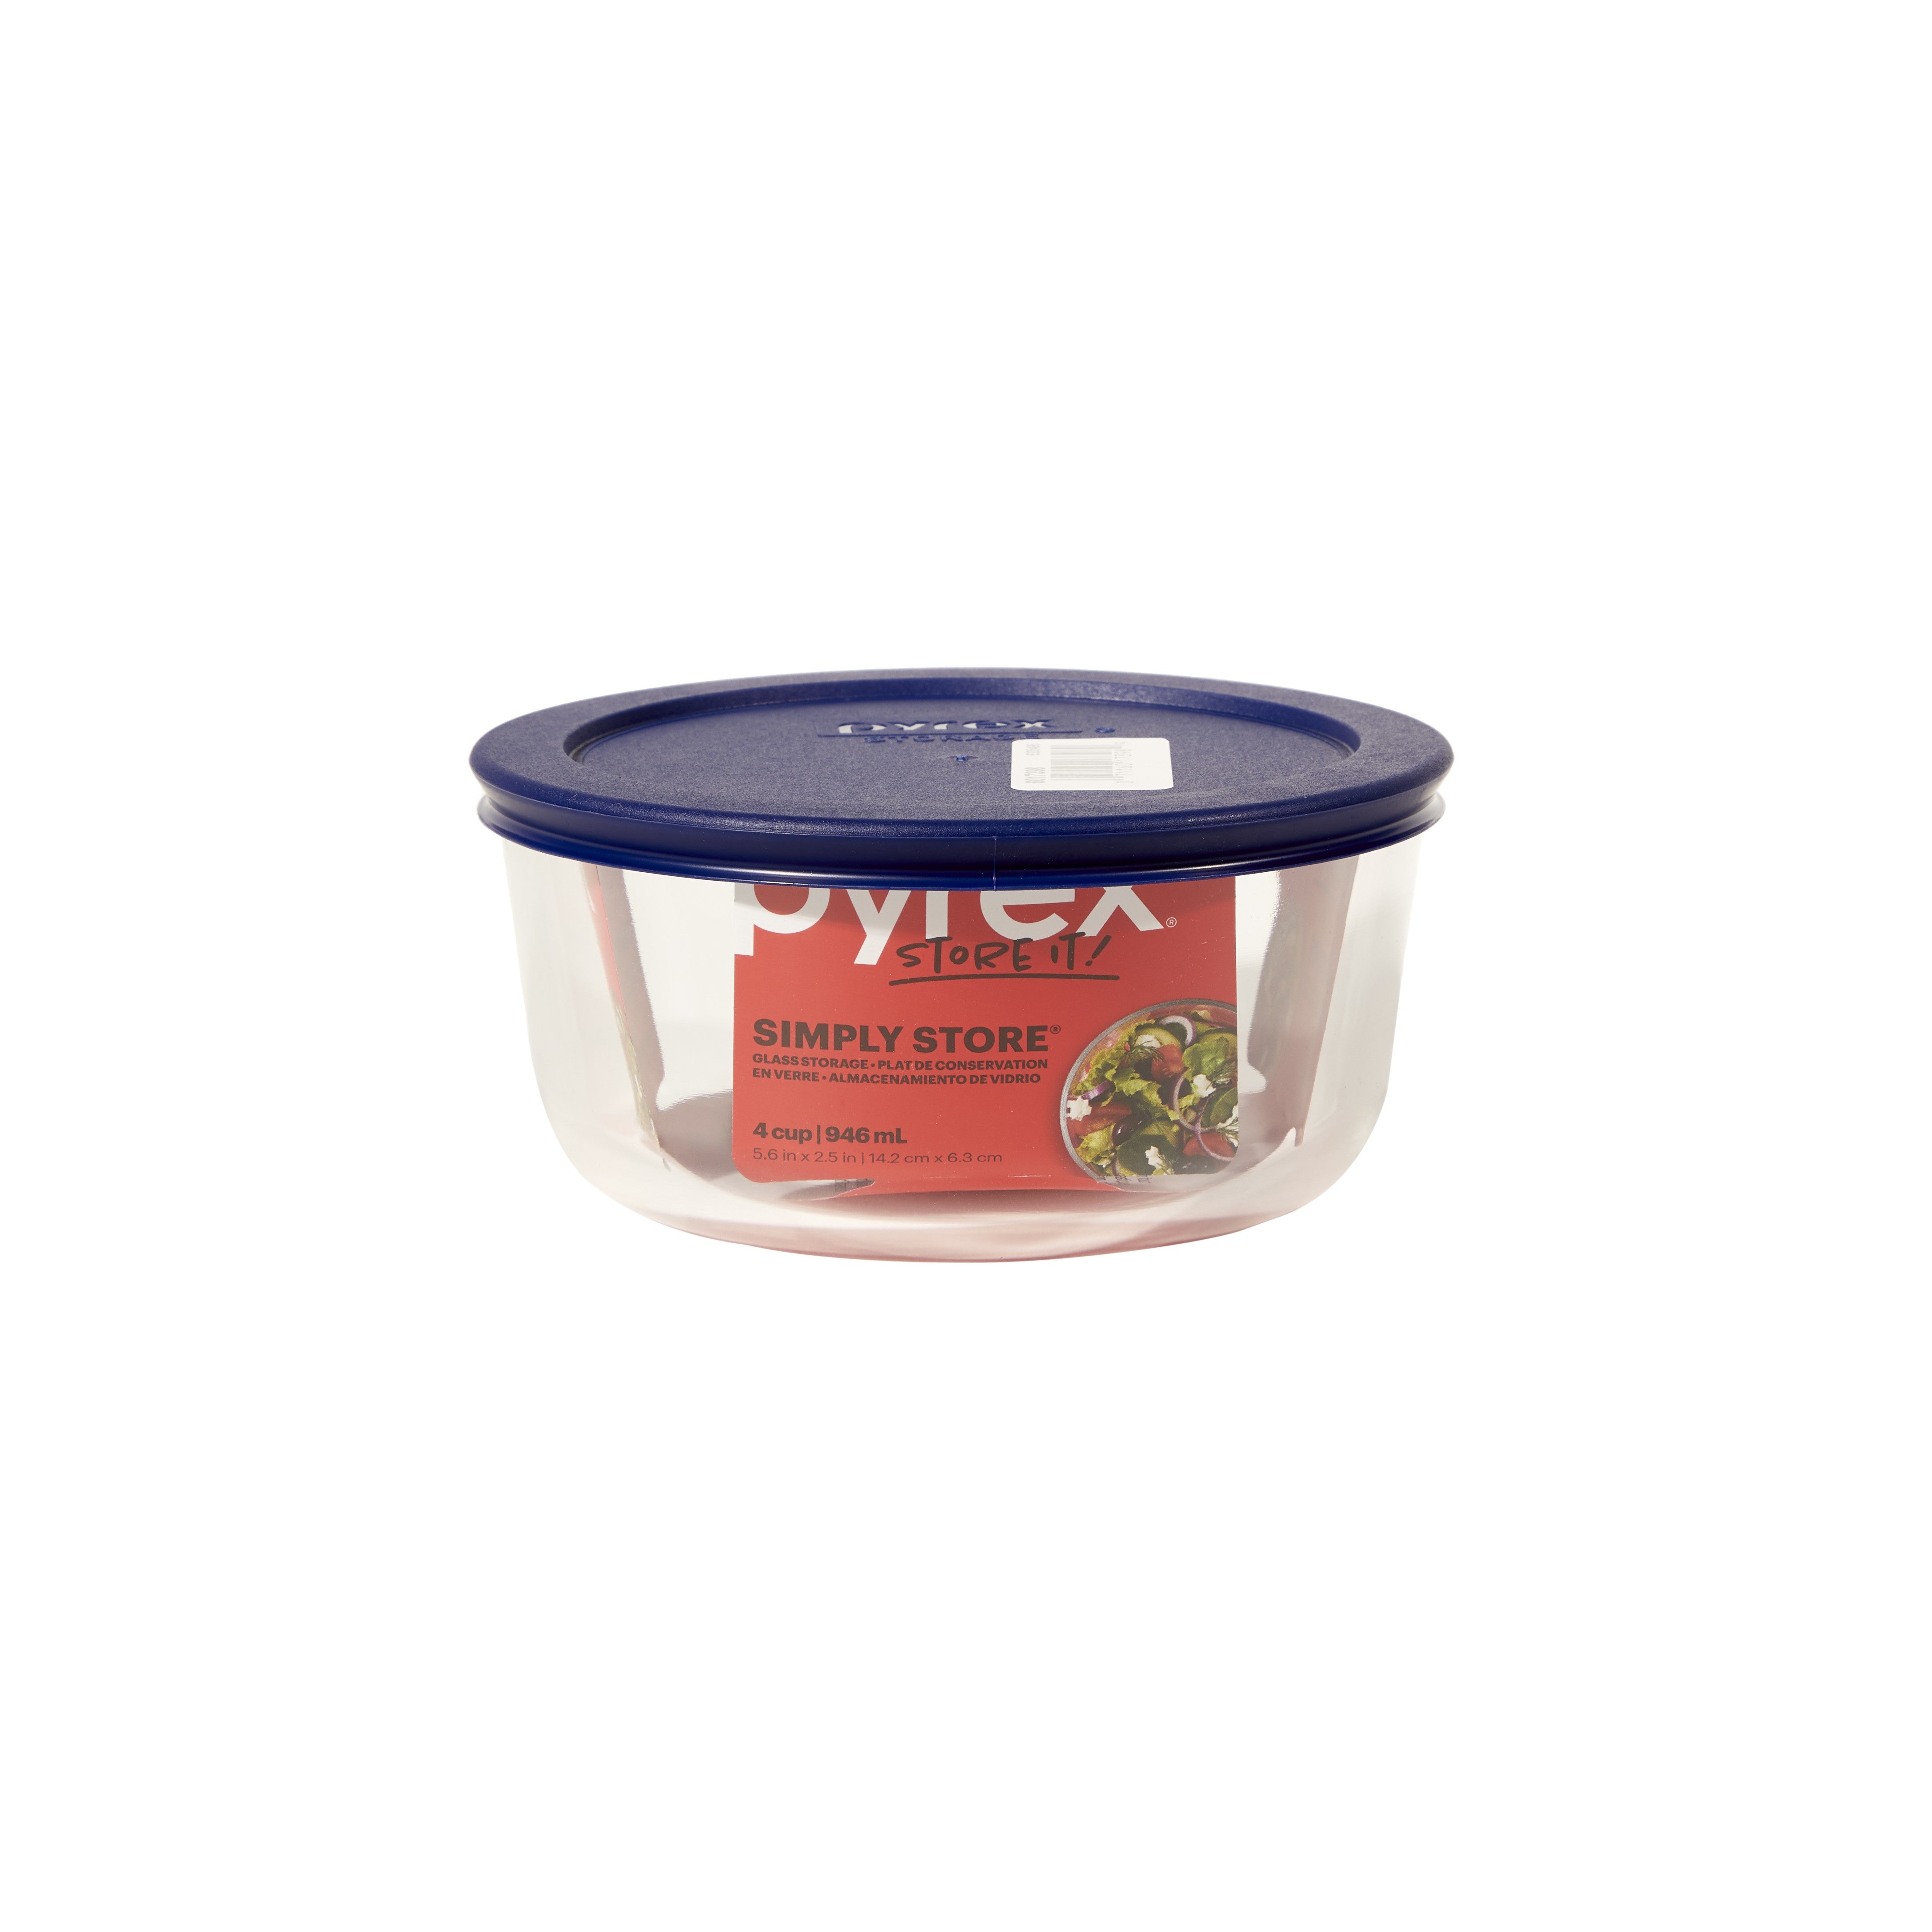 Pyrex® Storage Blue 4 Cup Round